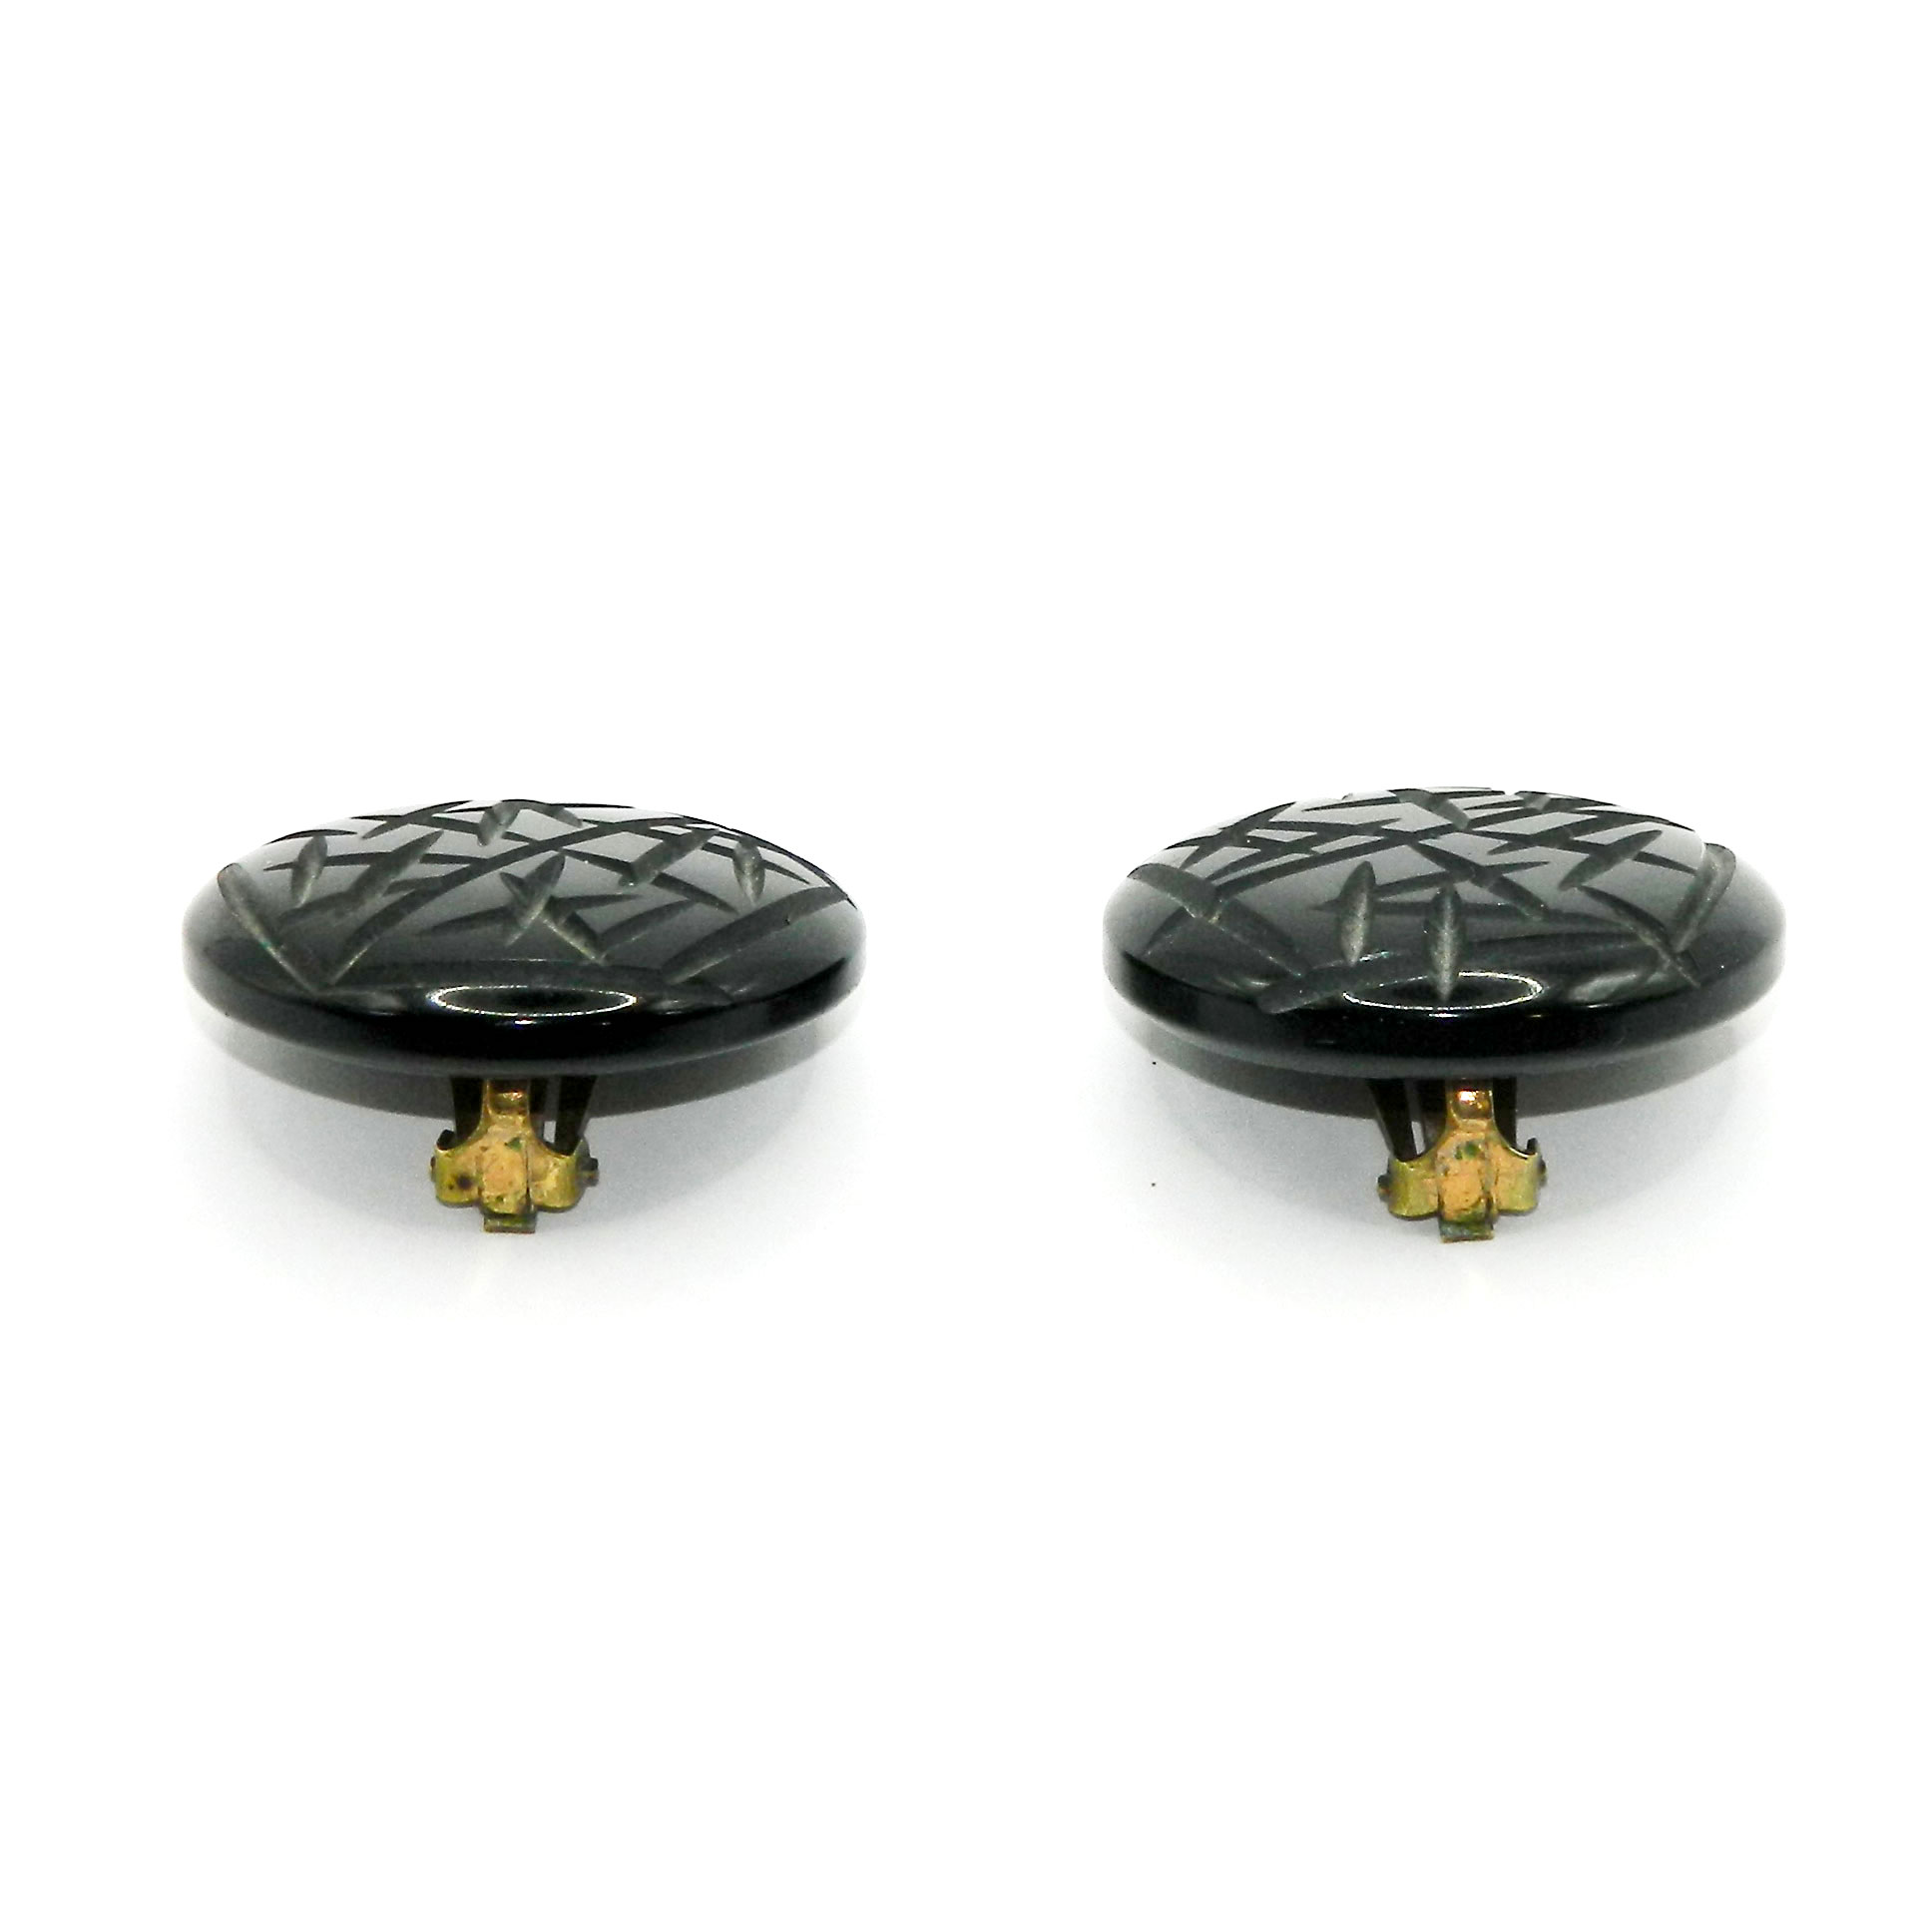 Carved black bakelite earrings